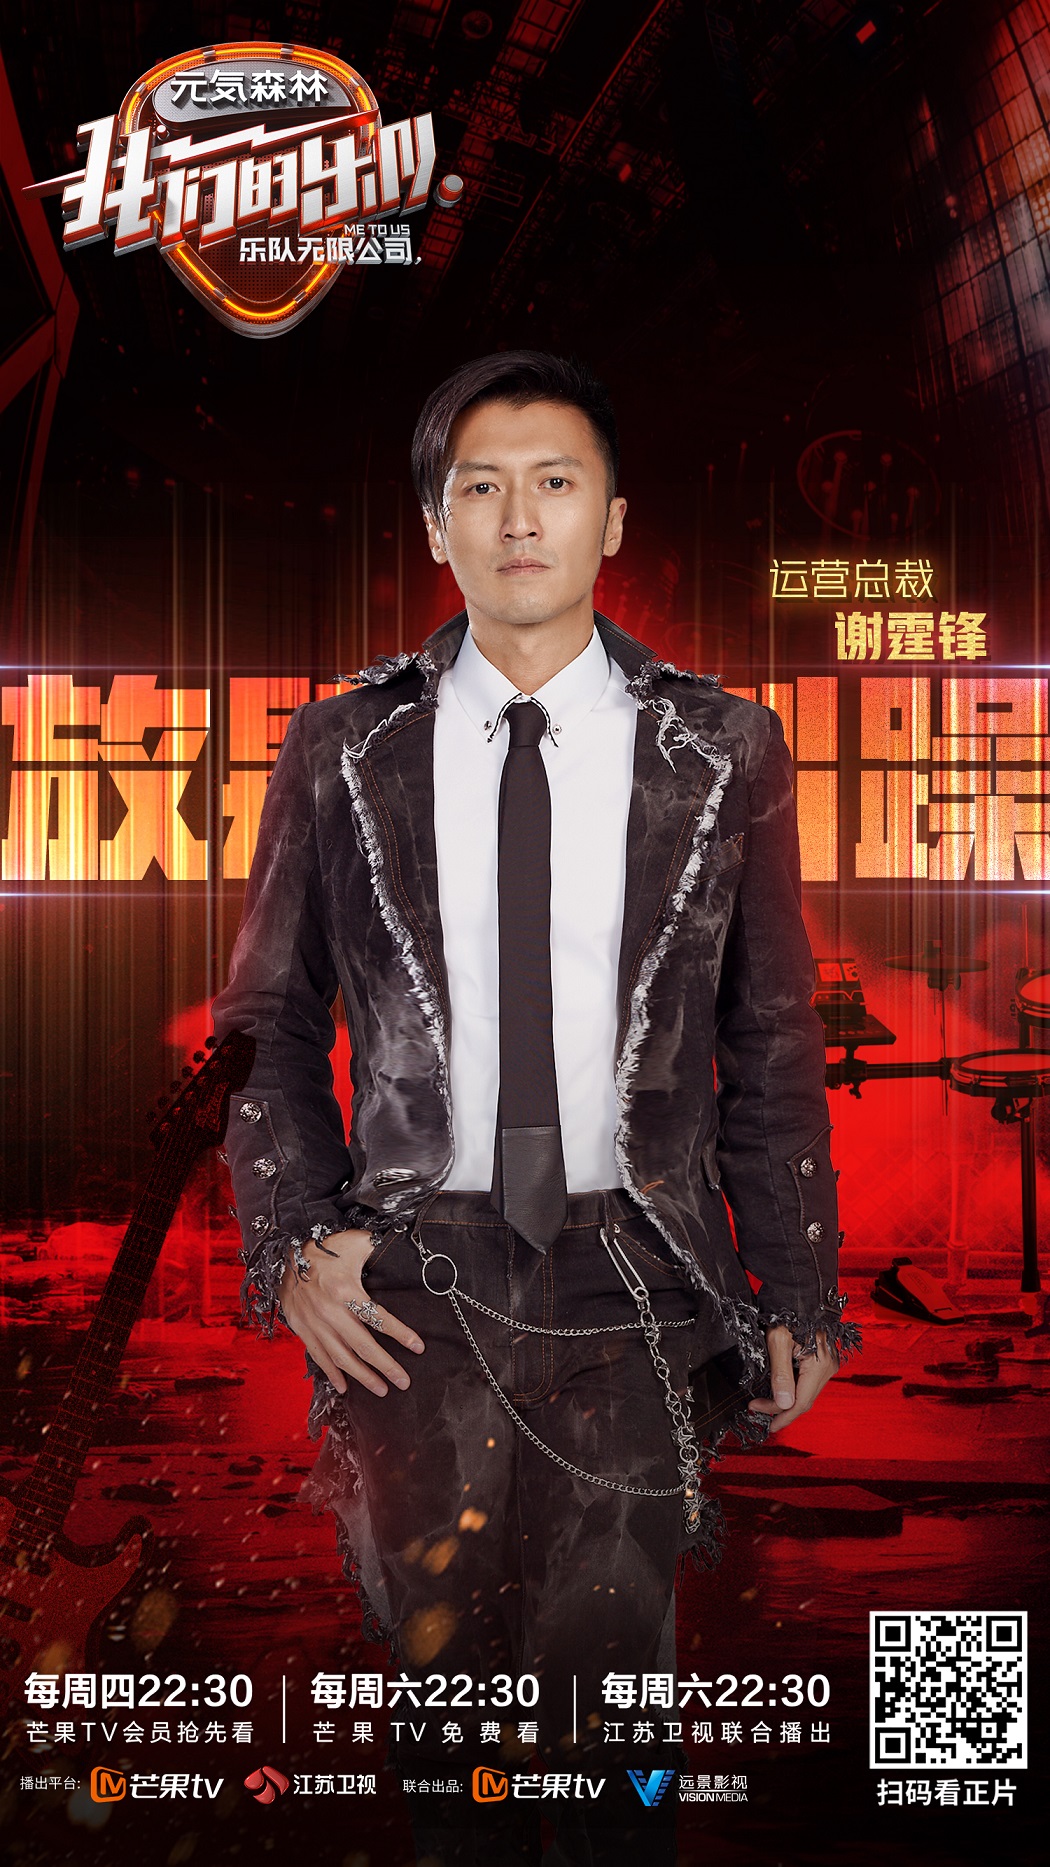 谢霆锋《我们的乐队》热播   与王俊凯萧敬腾打造中国制造乐队